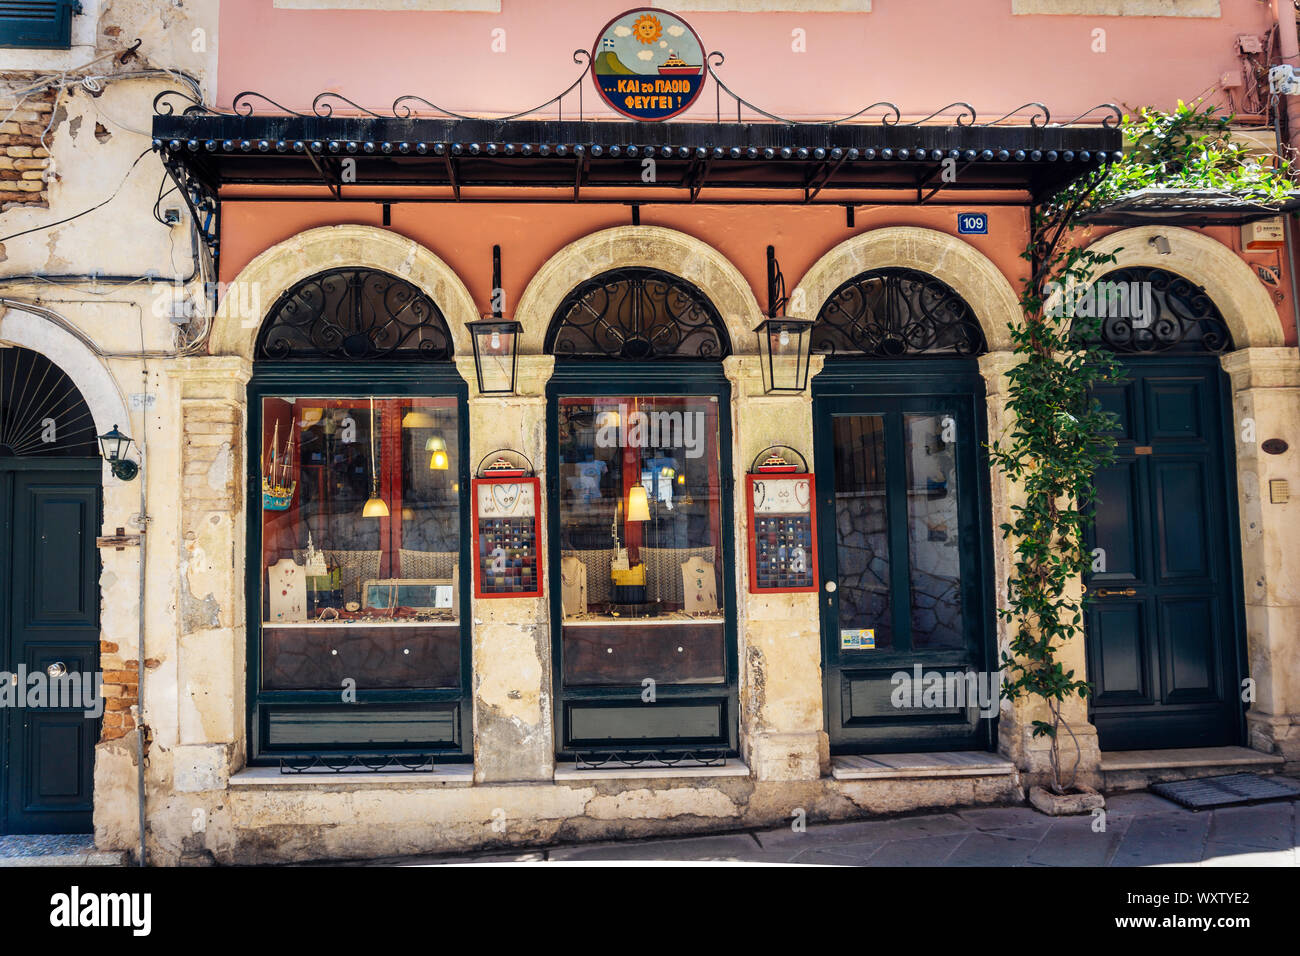 Corfù, Grecia - Giugno 06, 2018: negozio finestra Selezioni di gioielli facciata con un vitigno selvatico pianta e un bel segno negozio in Grecia - isole di Corfu - Corfu Foto Stock